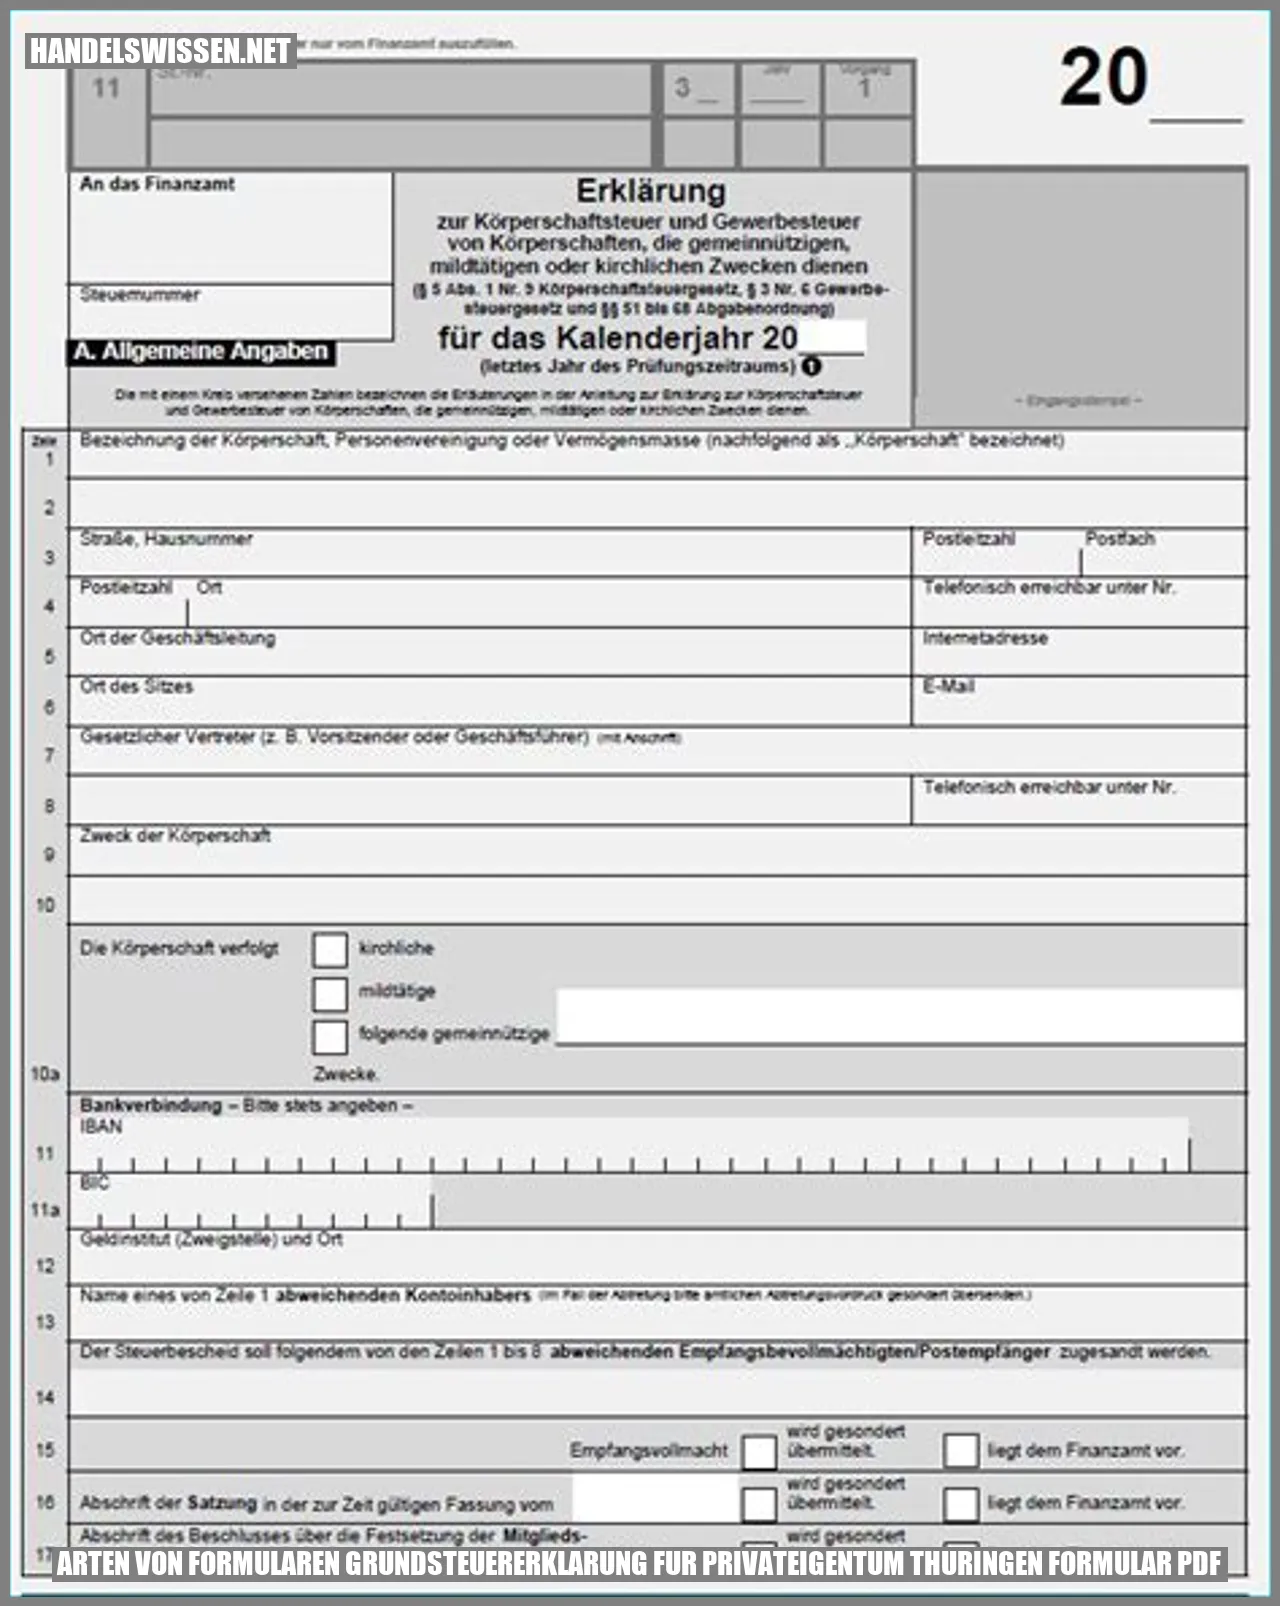 Arten von Formularen grundsteuererklarung fur privateigentum thuringen formular pdf